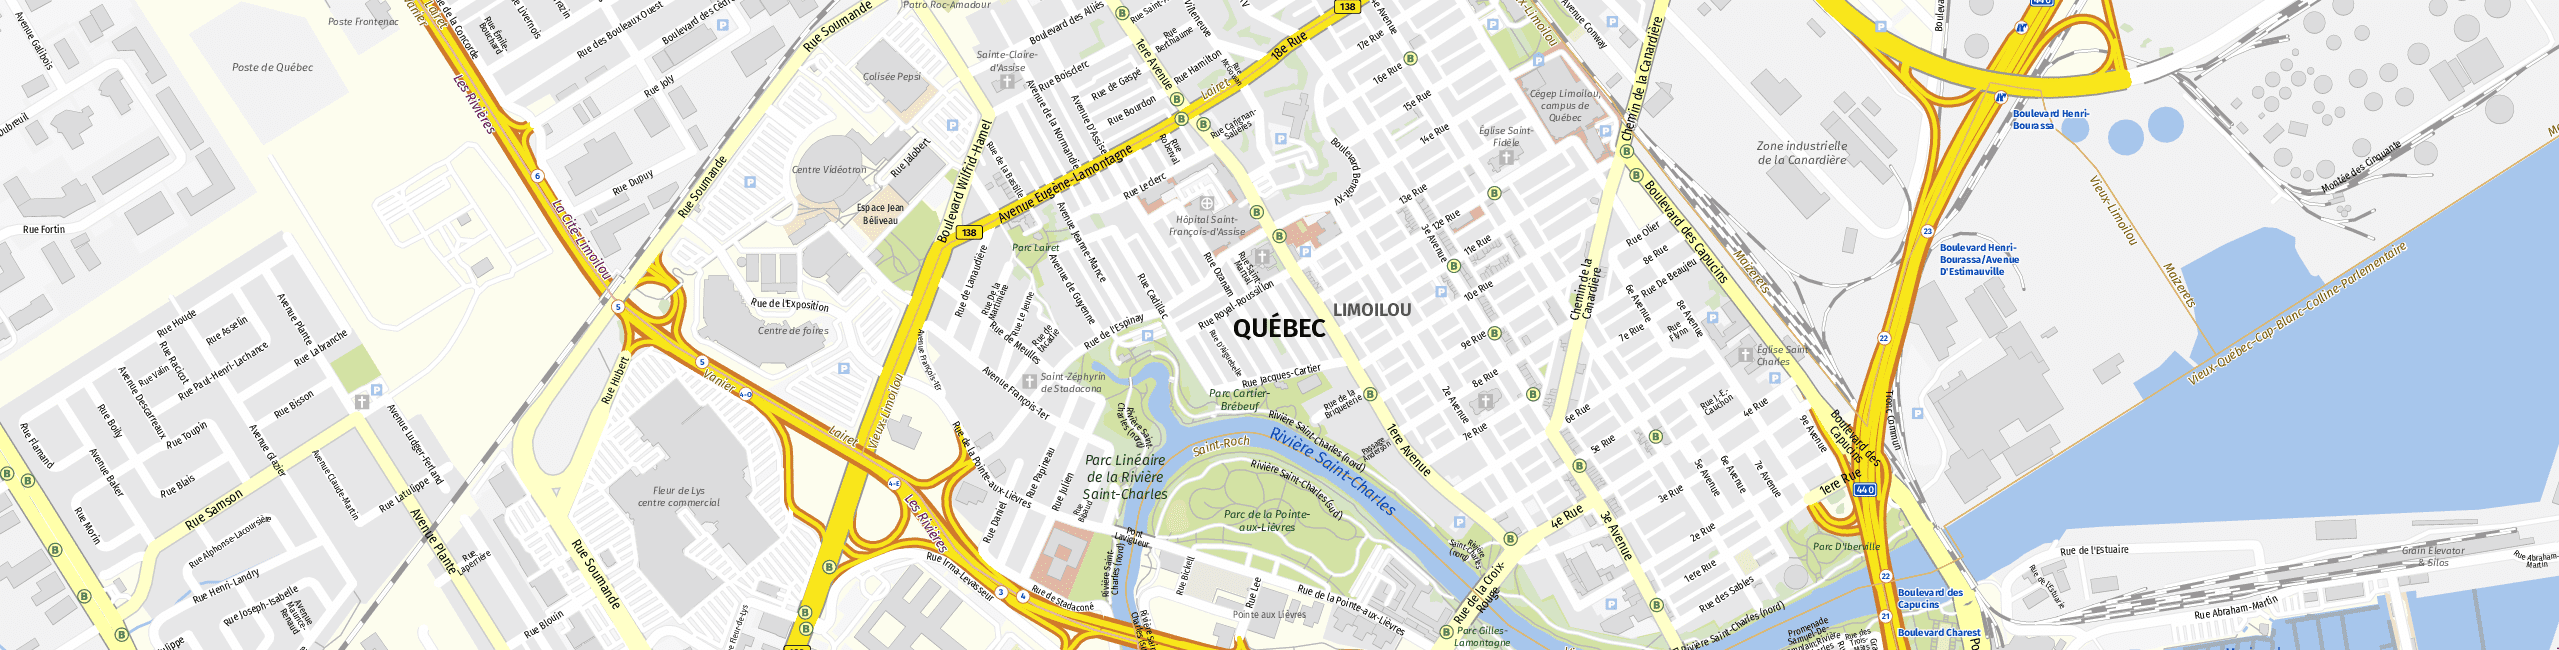 Stadtplan Quebec zum Downloaden.